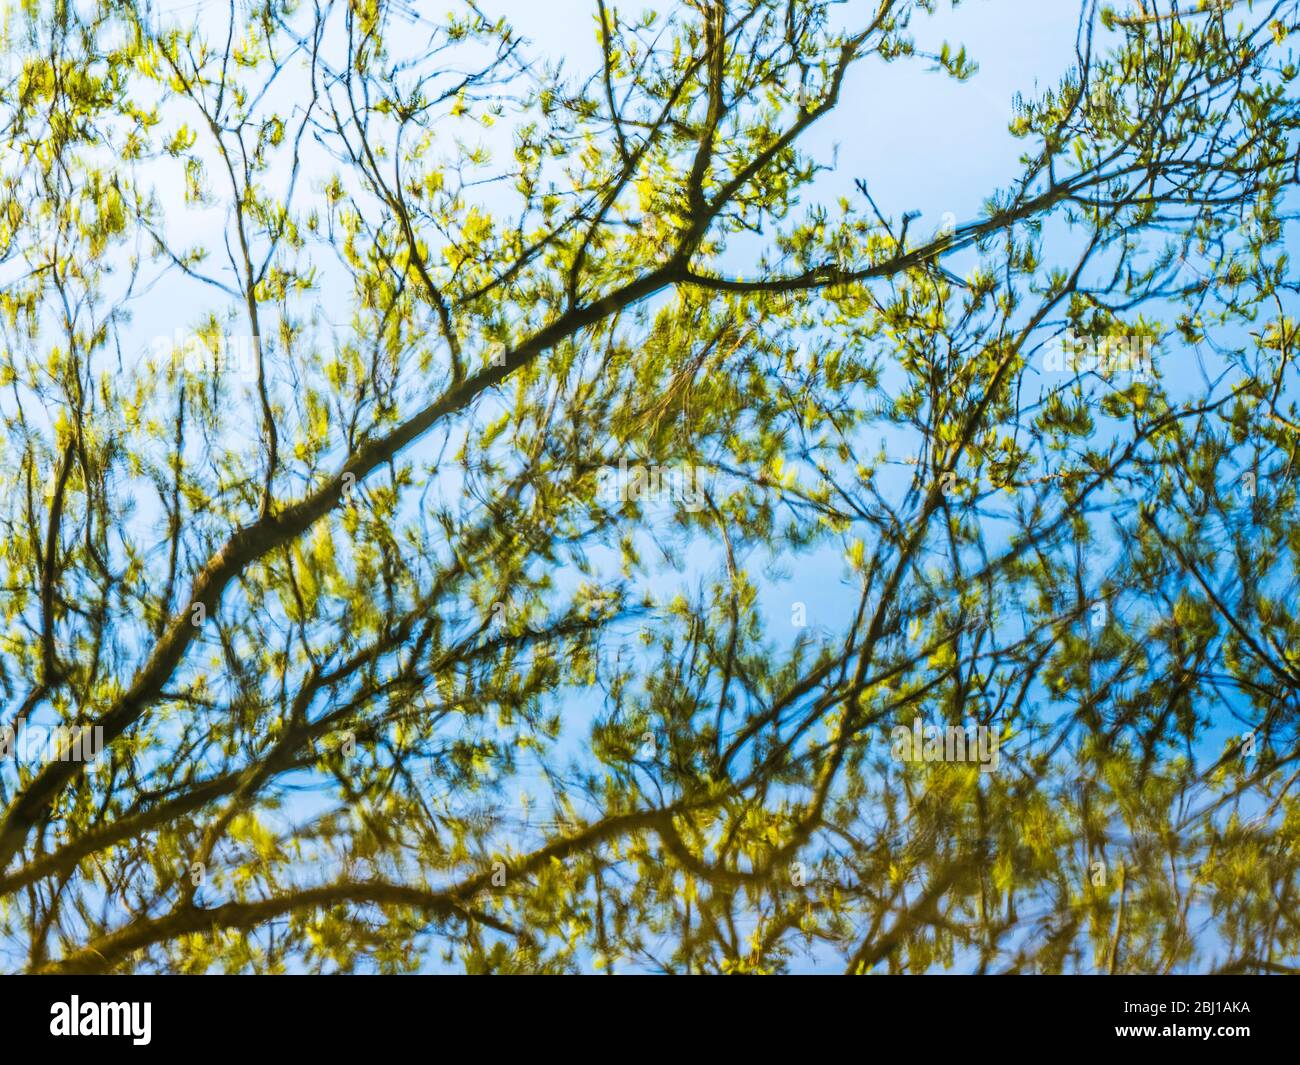 Ein abstraktes Bild von Ästen und Zweigen, die sich im stillen Wasser eines Sees spiegeln. Stockfoto